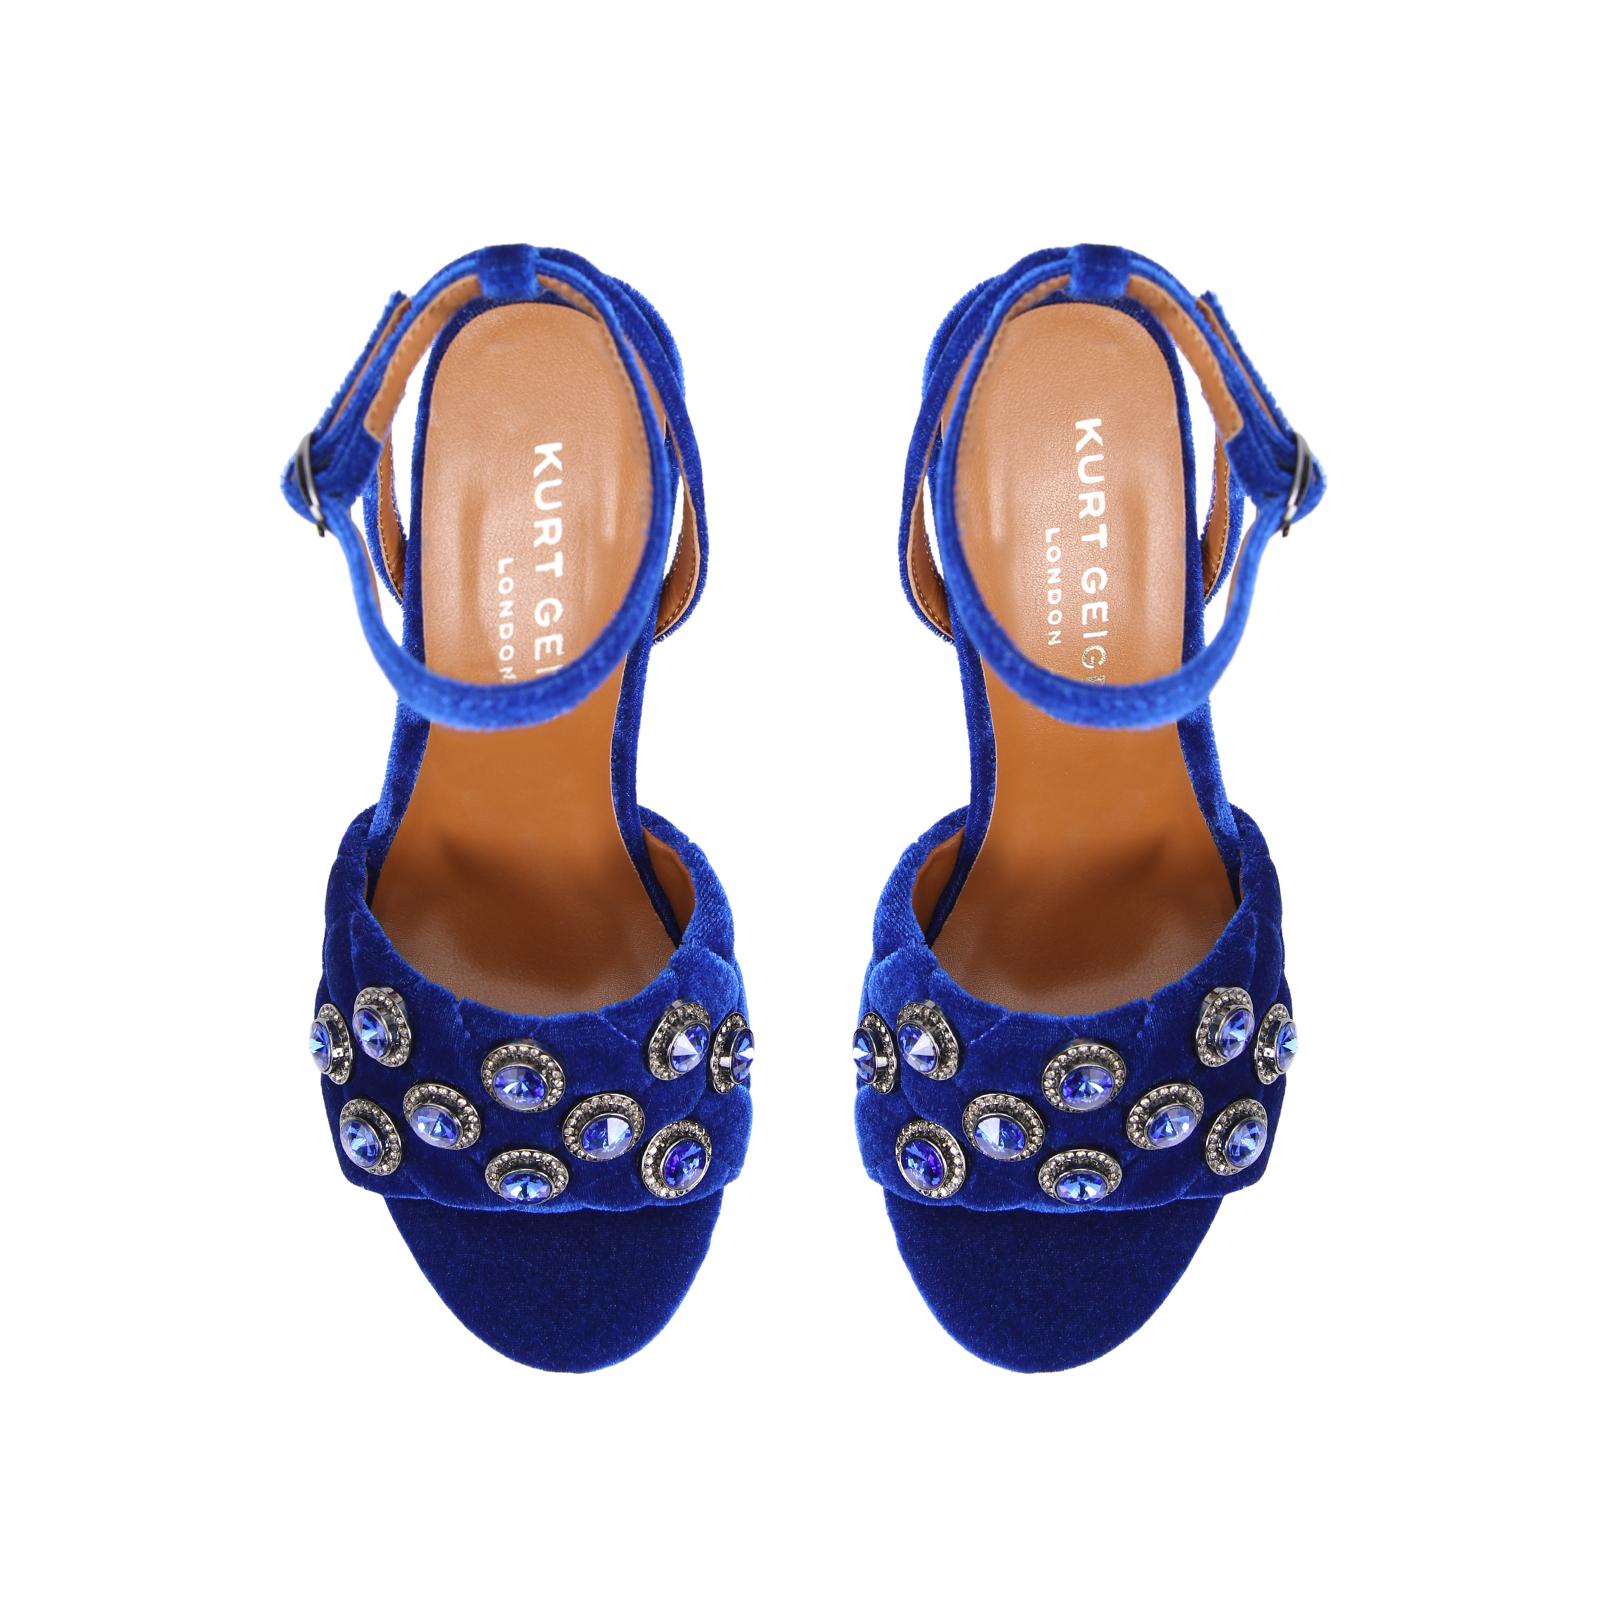 River Island Blue Velvet Embellished Block Heel Sandals